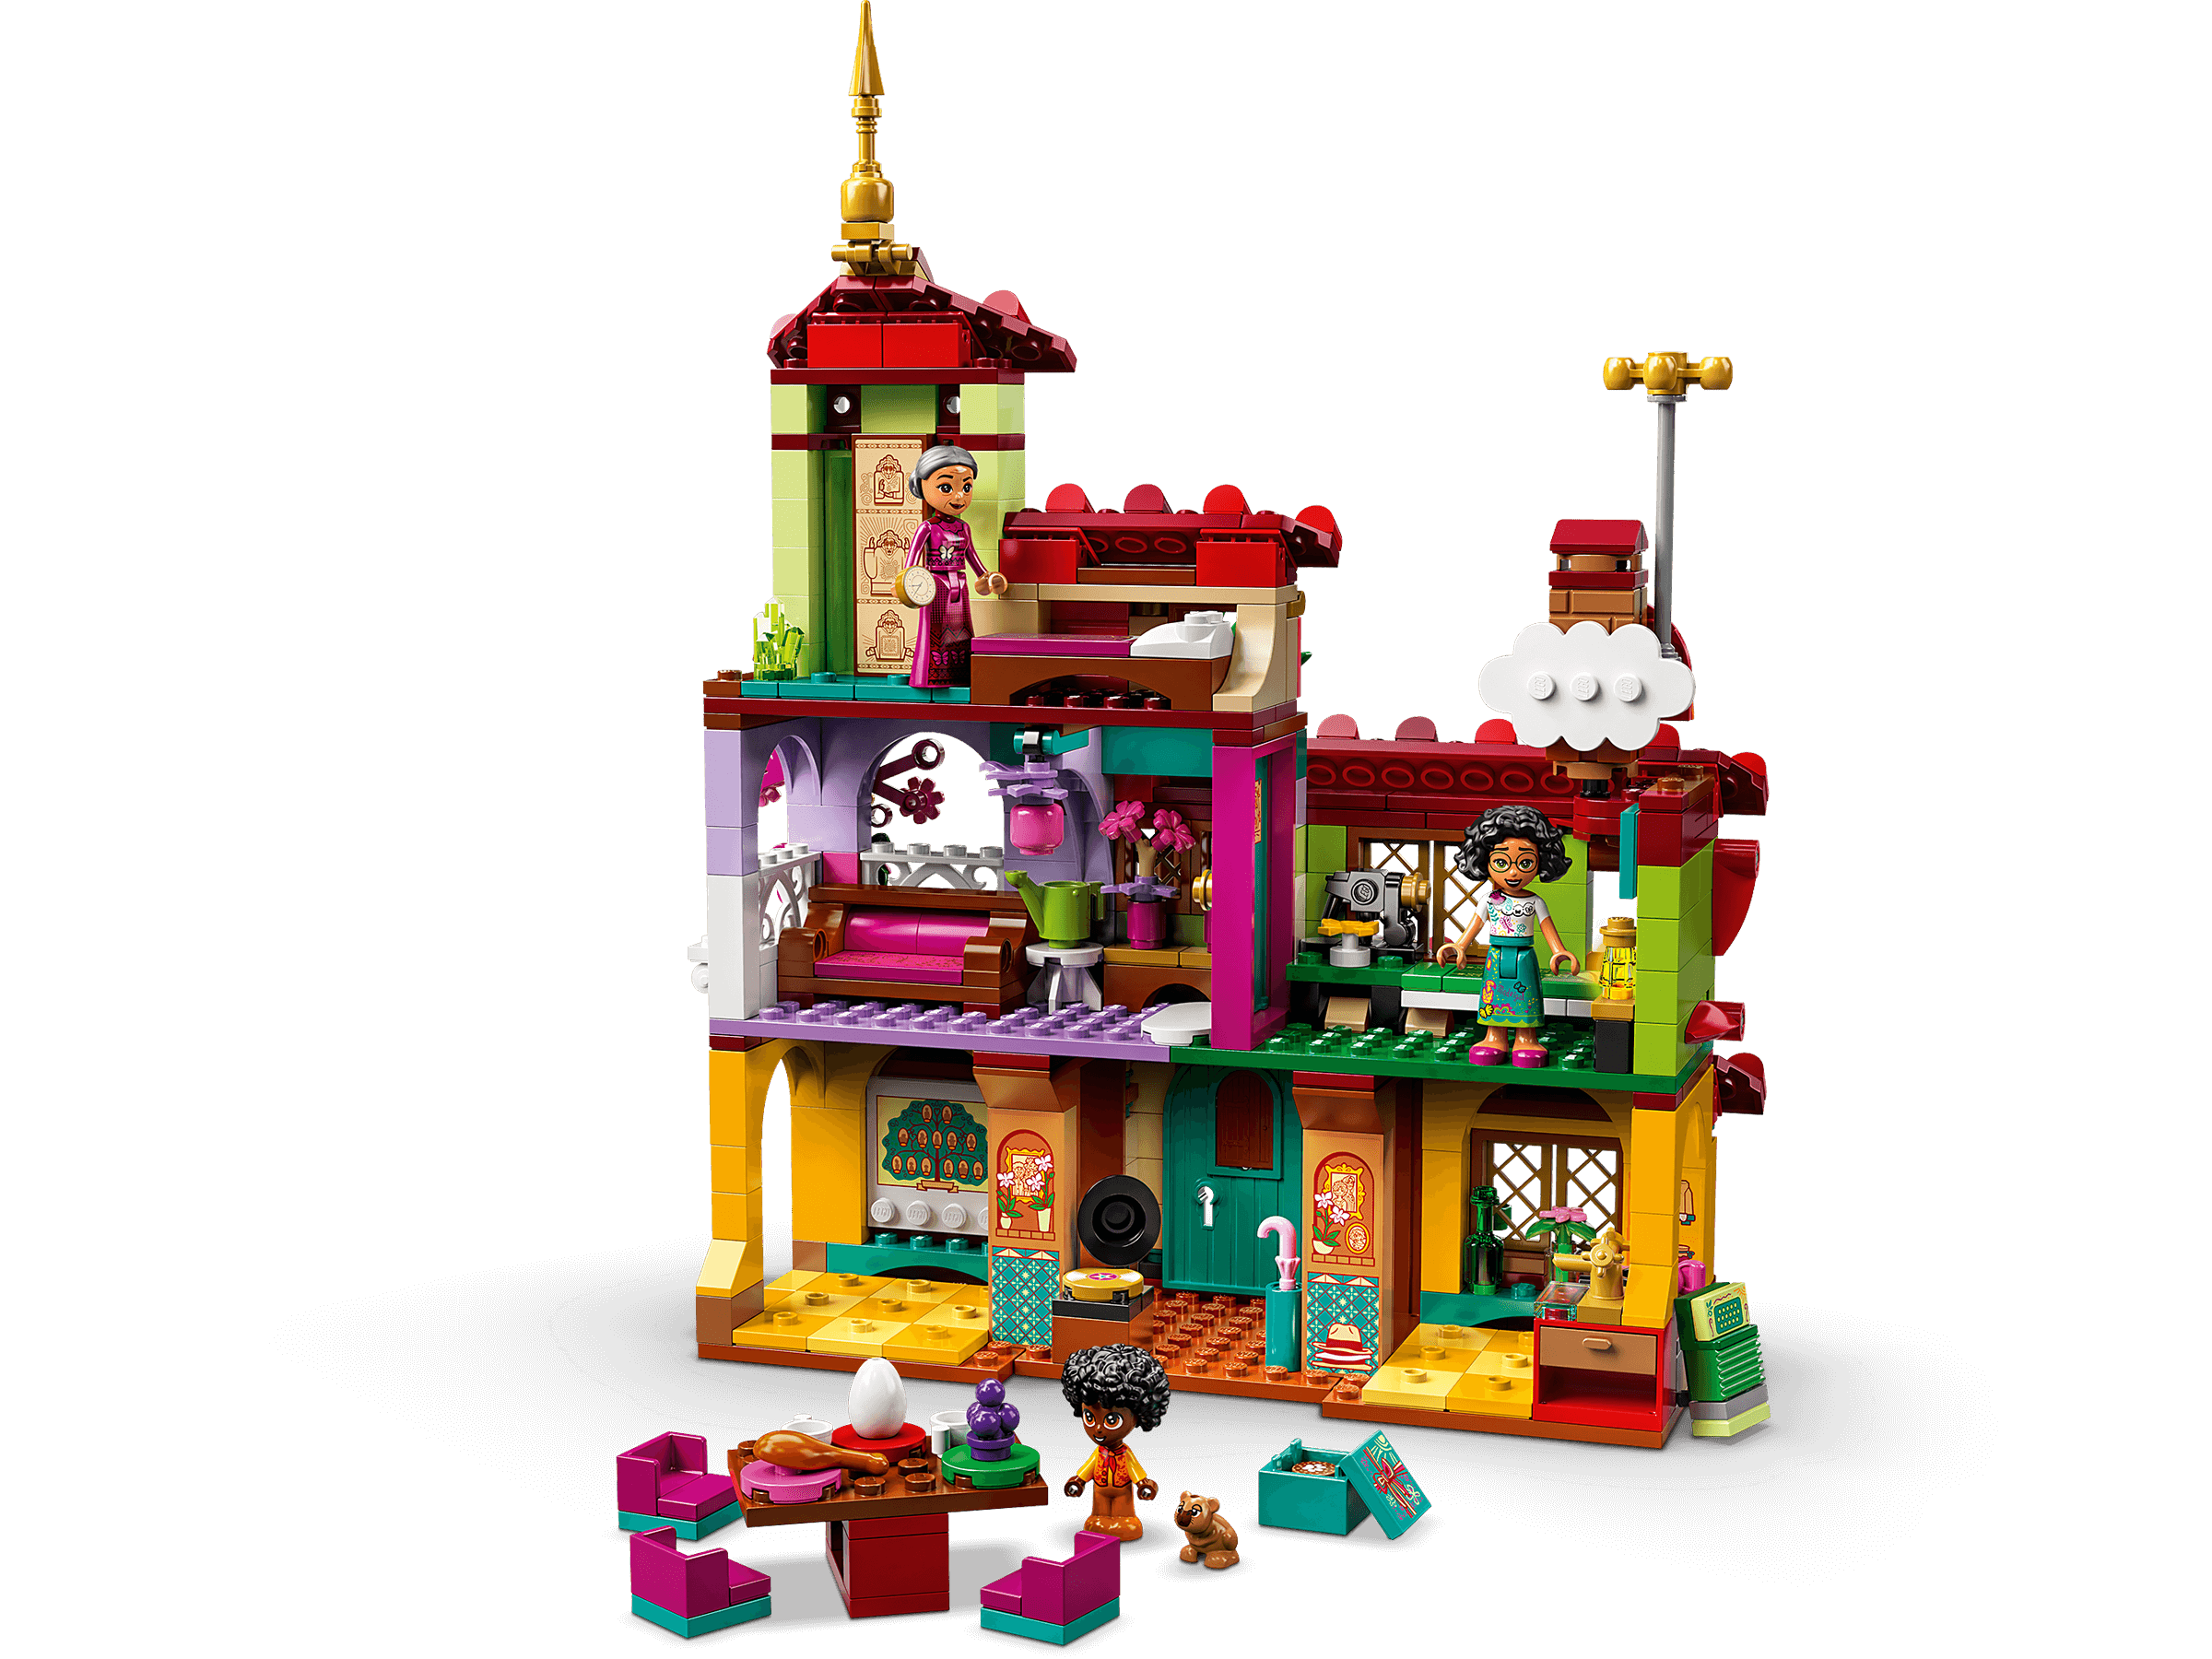 Lego 43202 disney princess la maison madrigal, jouet de construction, mini- poupees, idee de cadeau enfant +6 ans film encanto LEGO43202 - Conforama